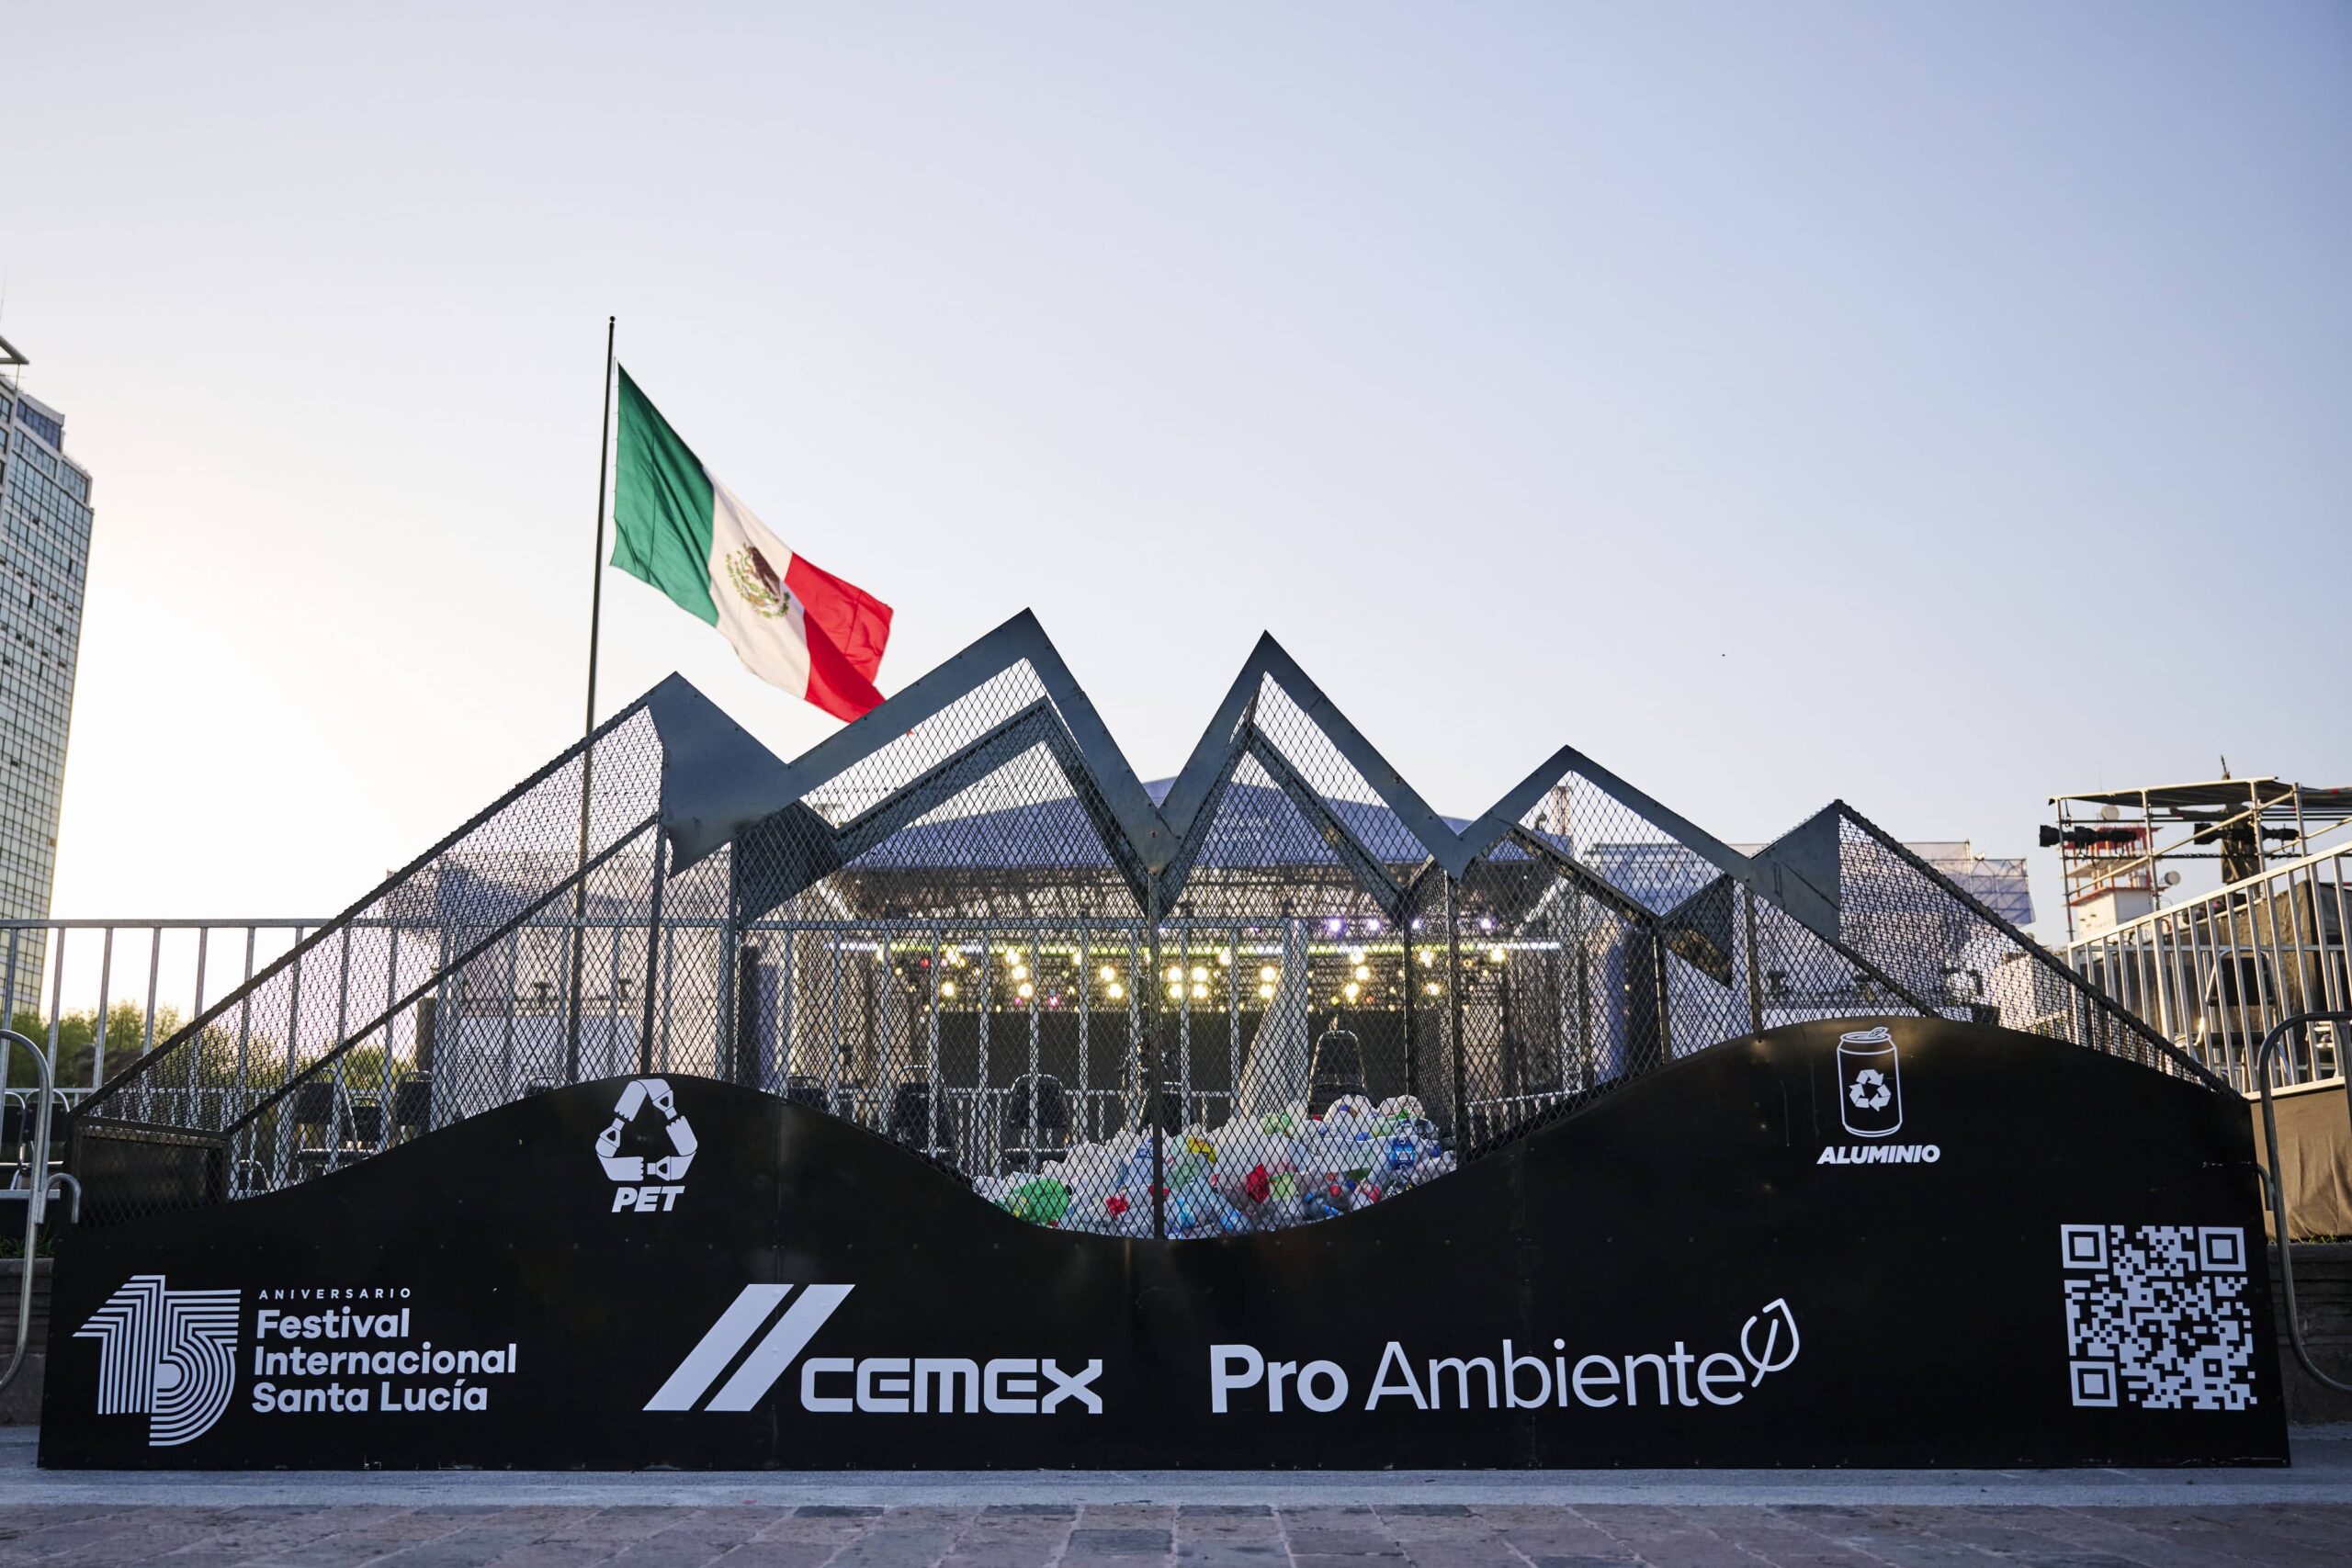 CEMEX convierte al Festival Internacional de Santa Lucía en un evento cero residuos